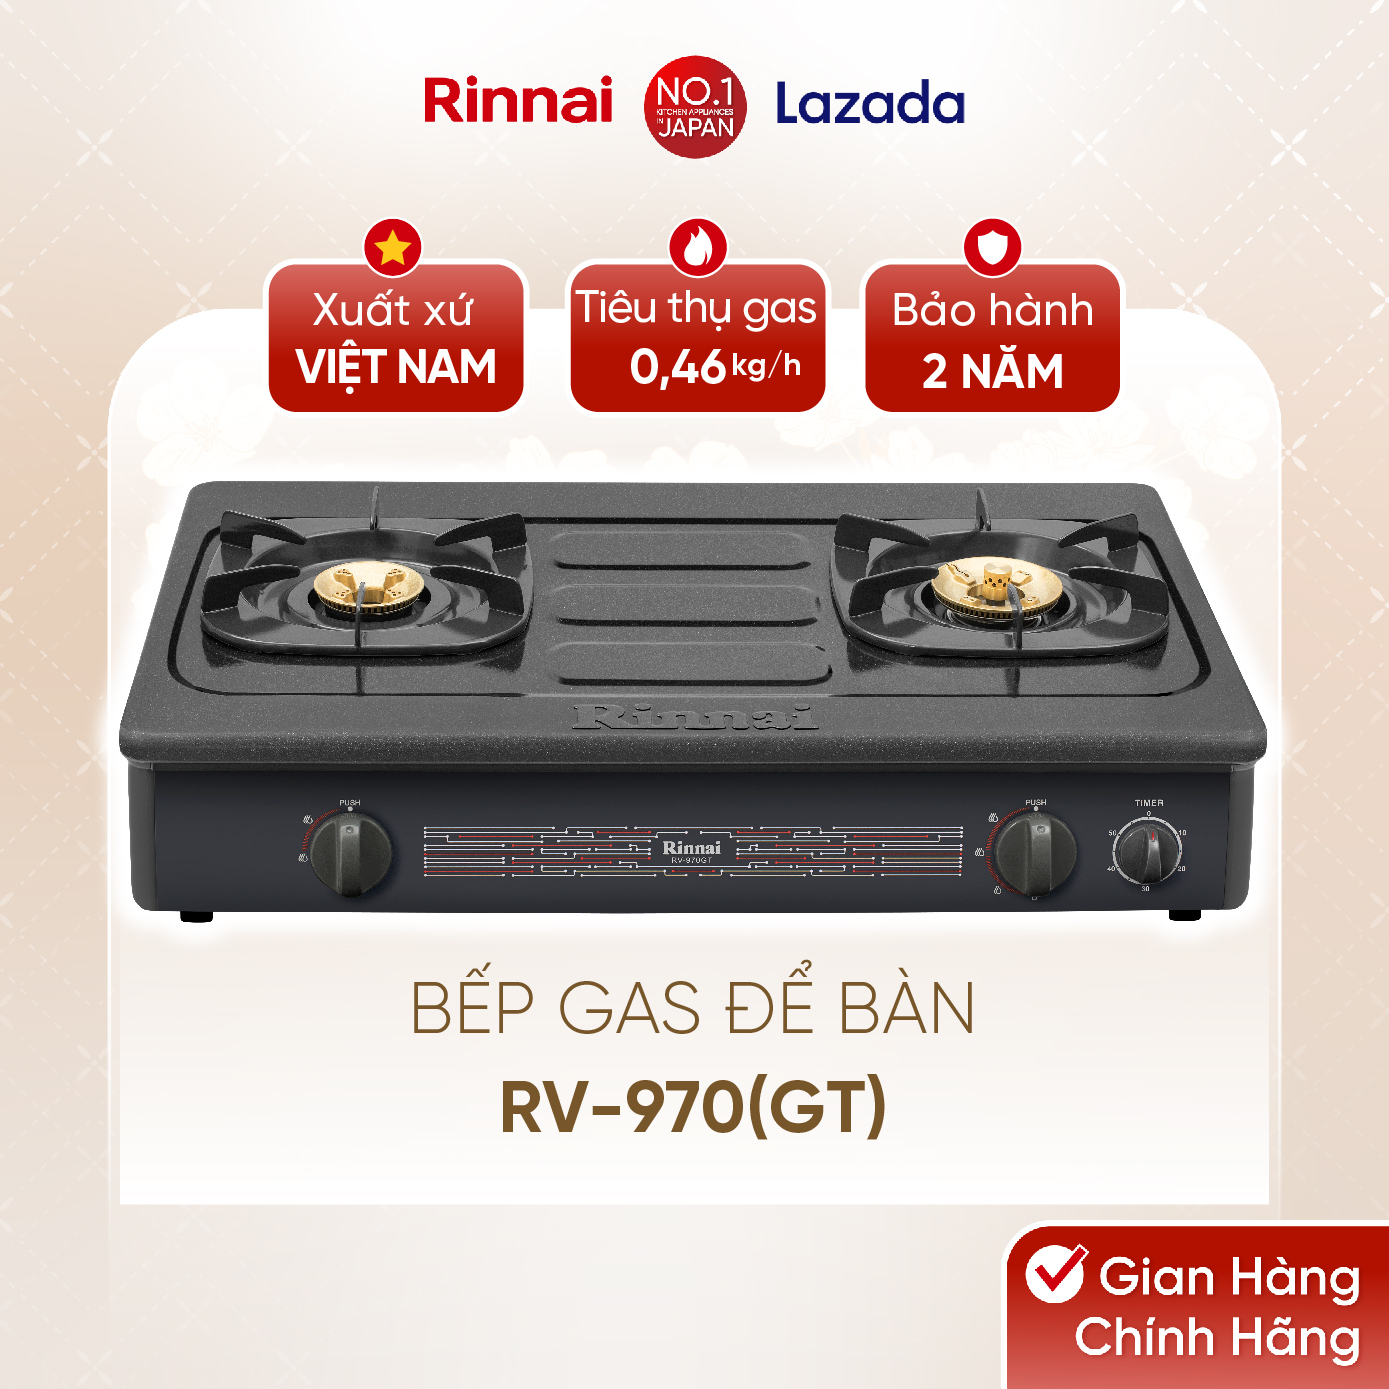 Bếp gas dương Rinnai RV-970(GL) mặt bếp kính và kiềng bếp men - Hàng chính hãng.